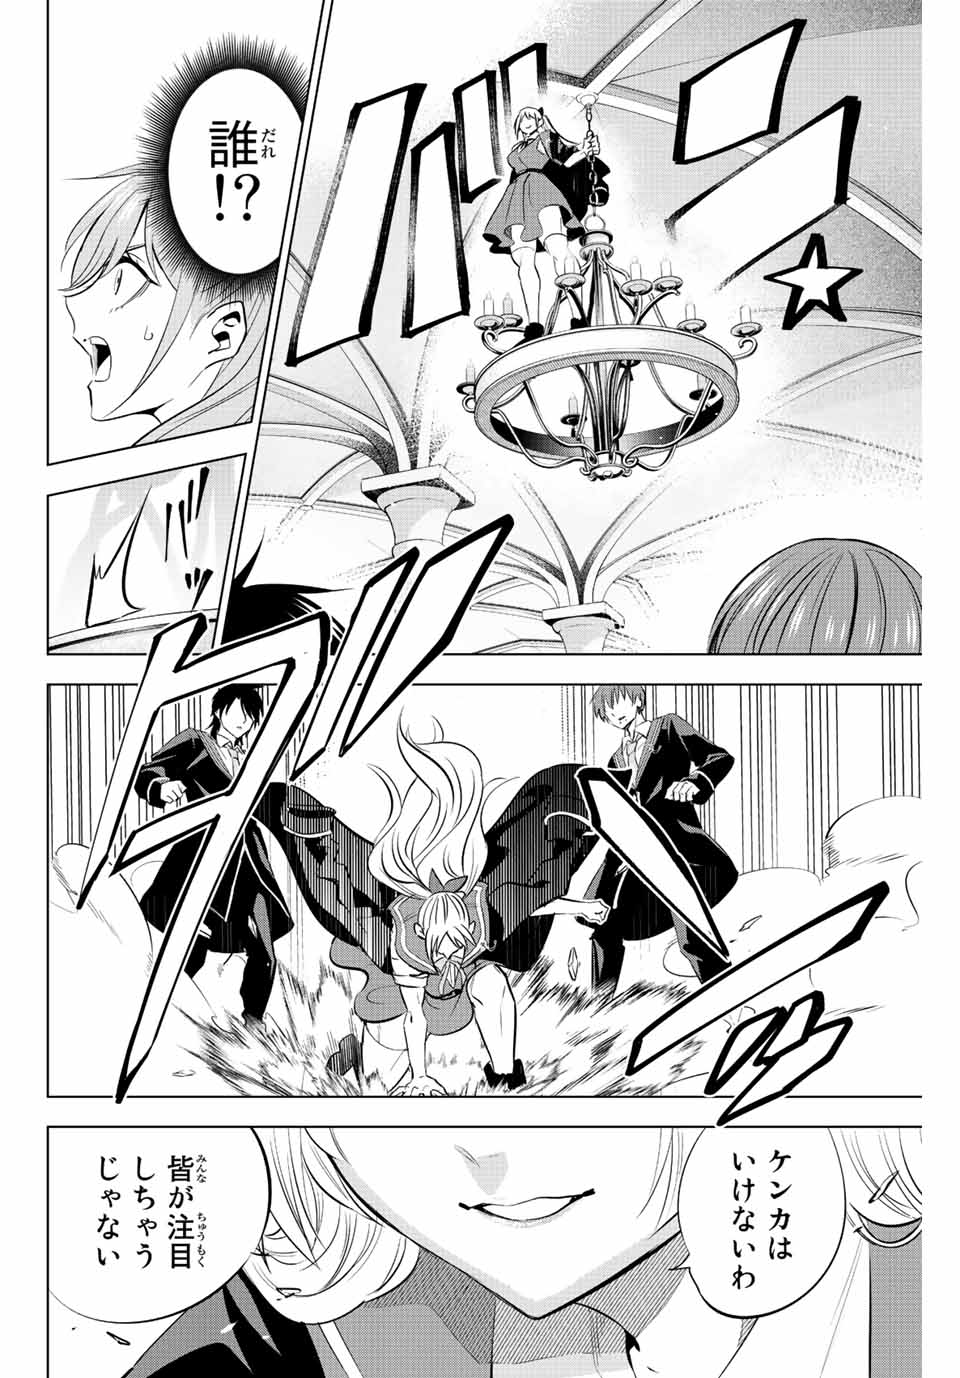 Kuroneko to Majo no Kyoushitsu - Chapter 4.1 - Page 22